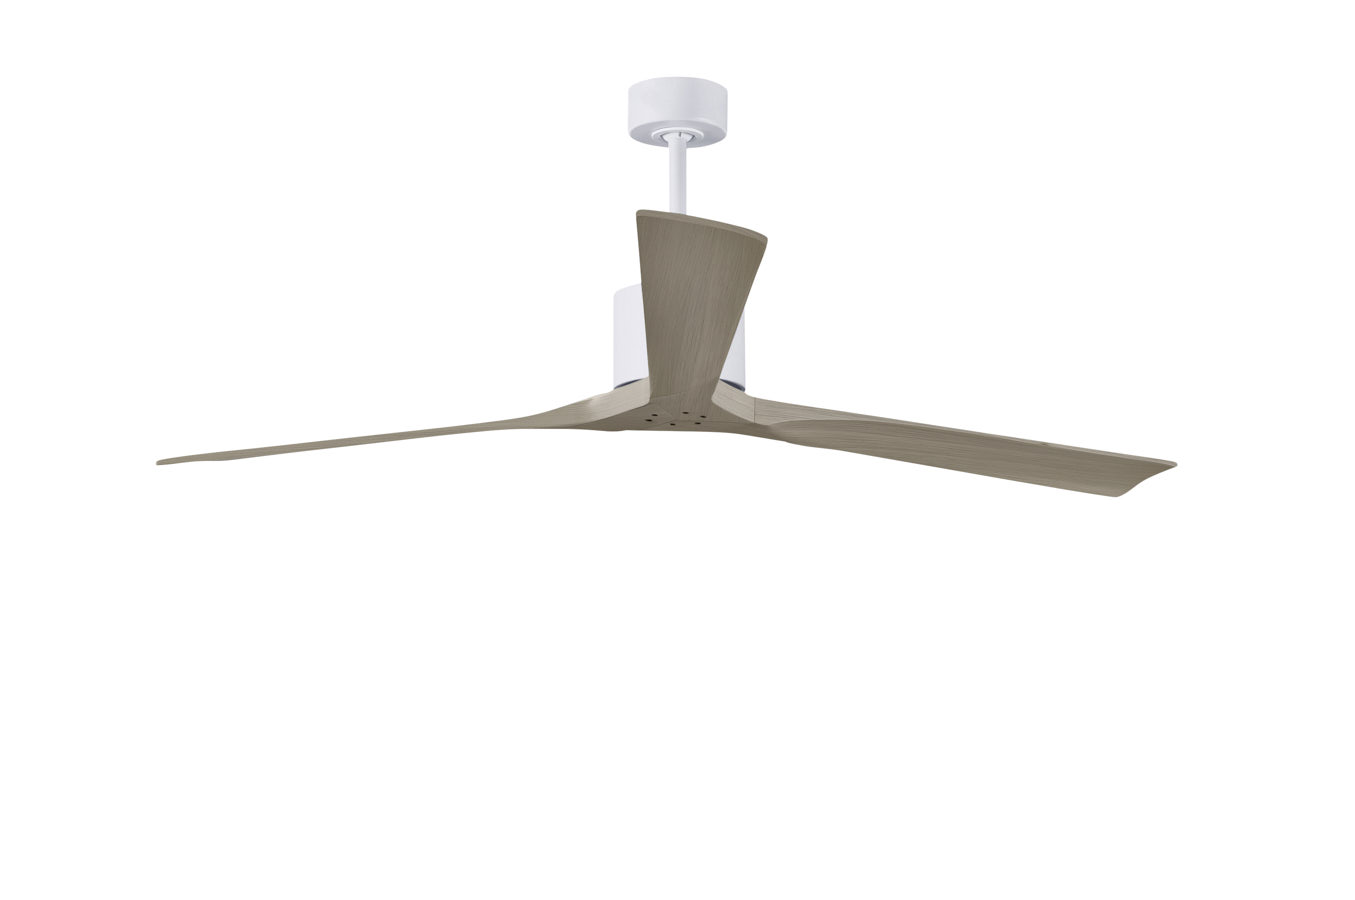 Nan XL ceiling fan in Matte White with 72” Gray Ash blades